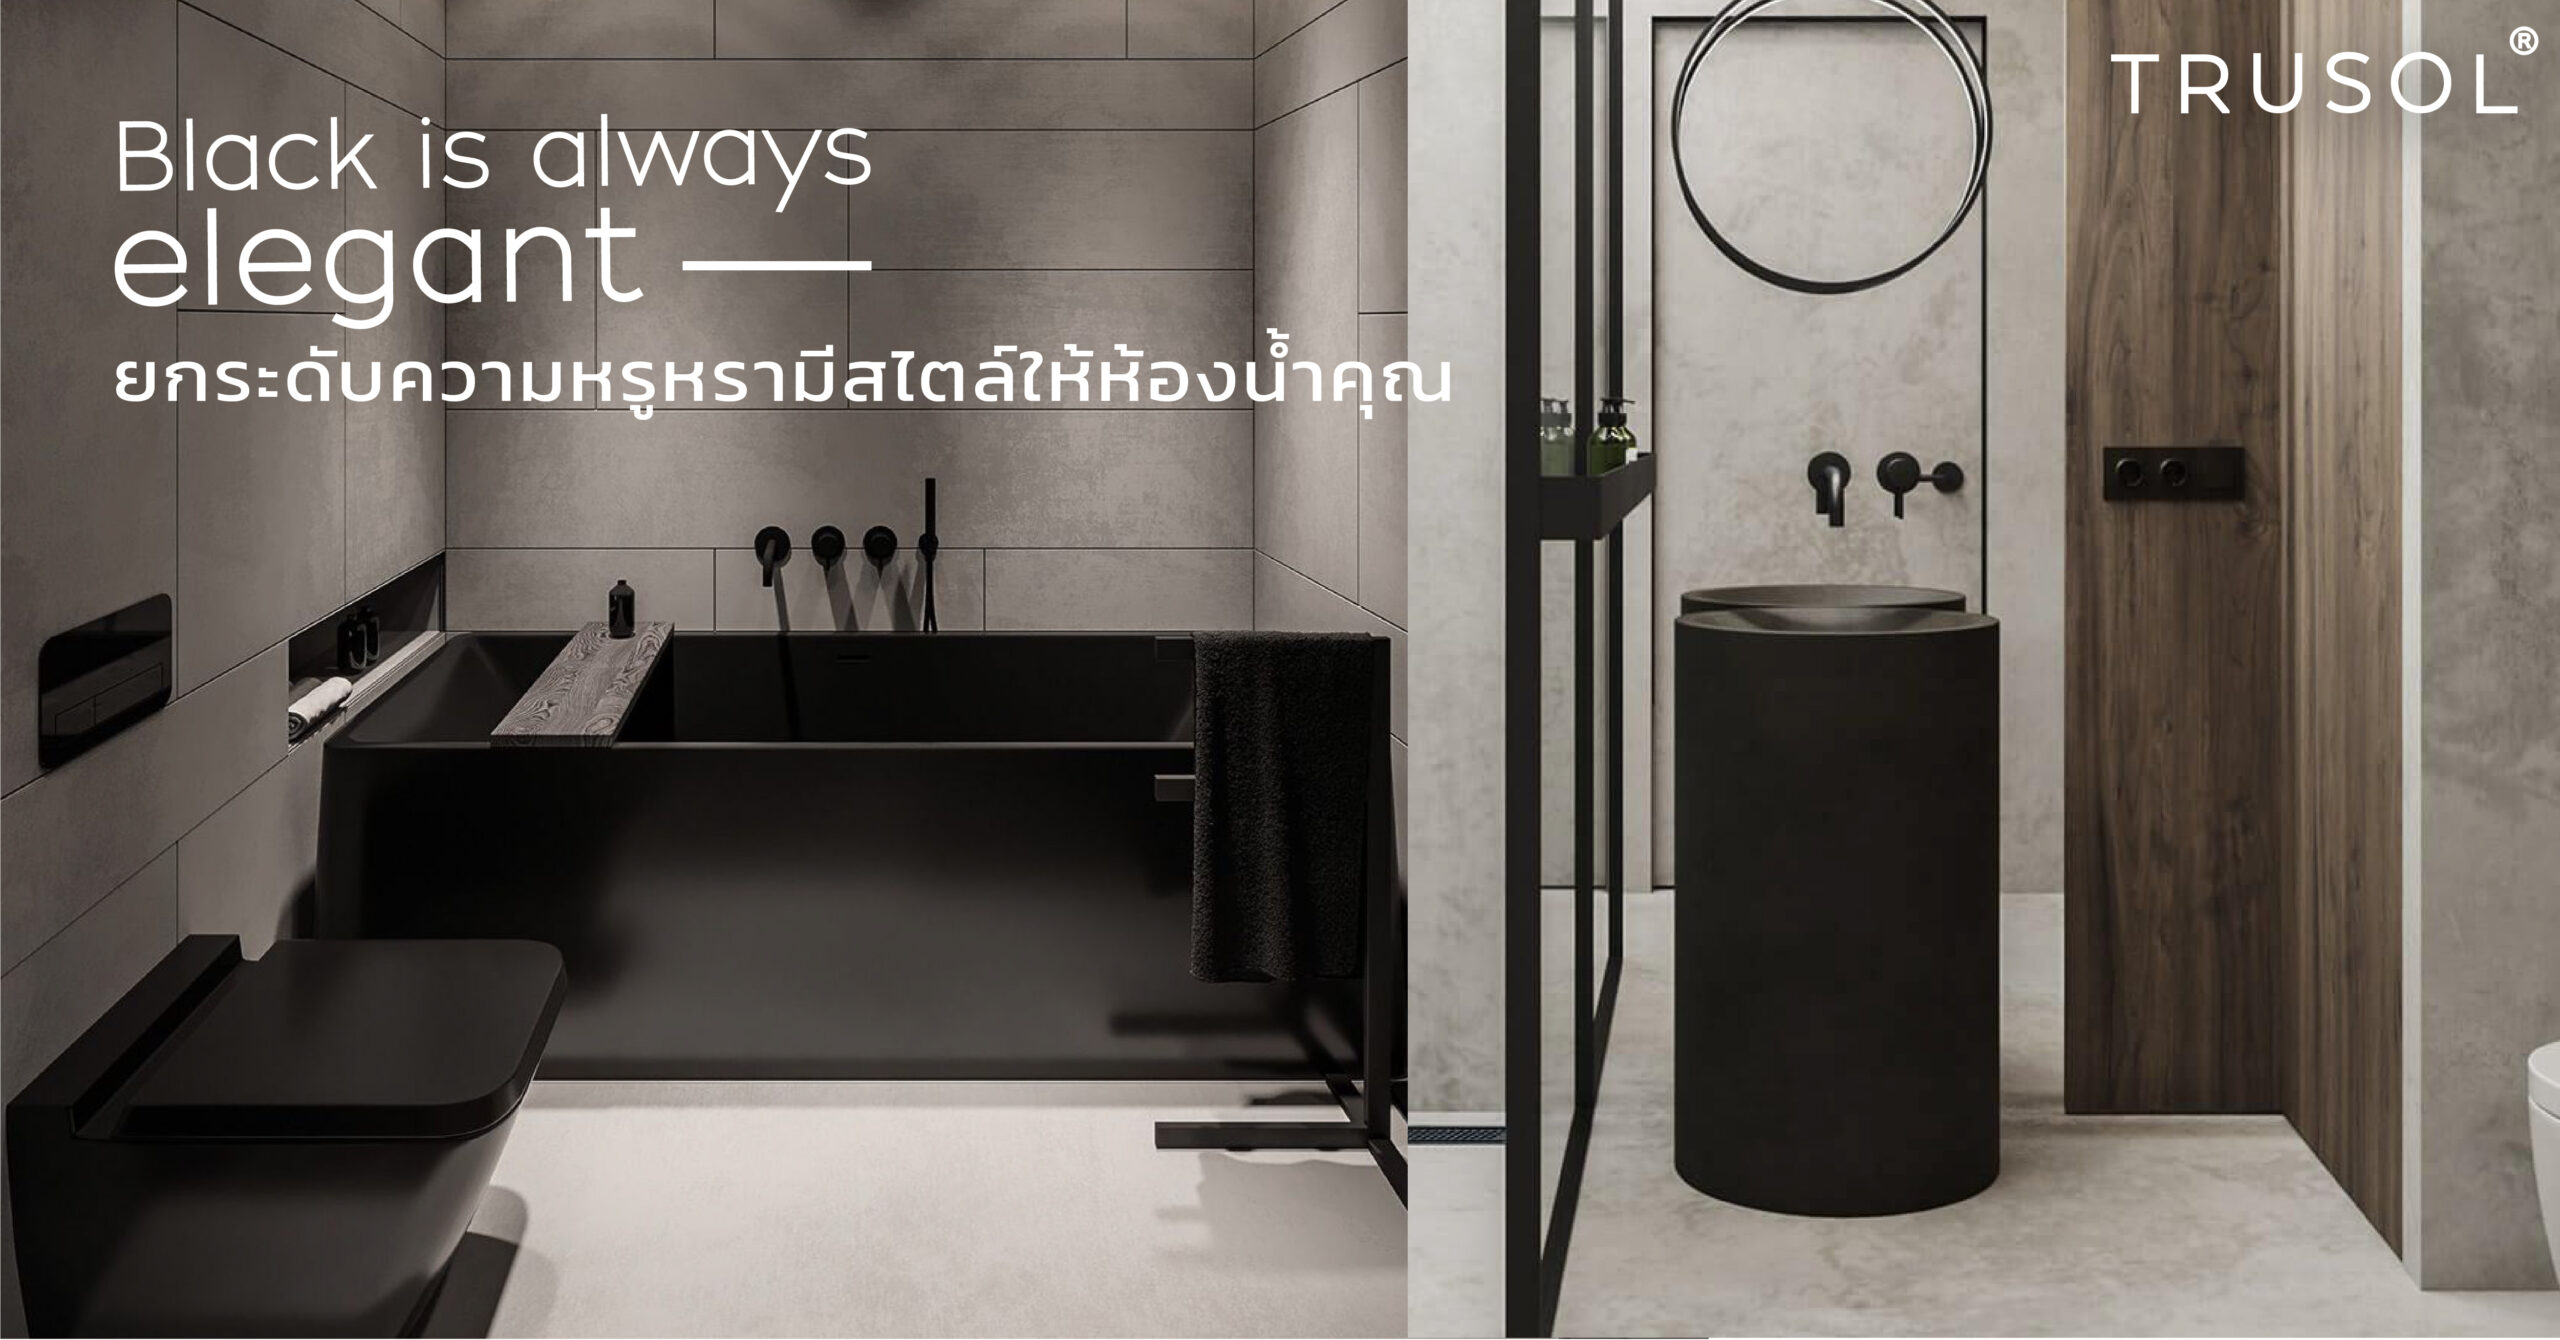 Black is always elegant อ่างล้างหน้าสีดำ ที่พร้อมยกระดับความหรูหรา มีสไตล์ ให้กับห้องน้ำคุณ